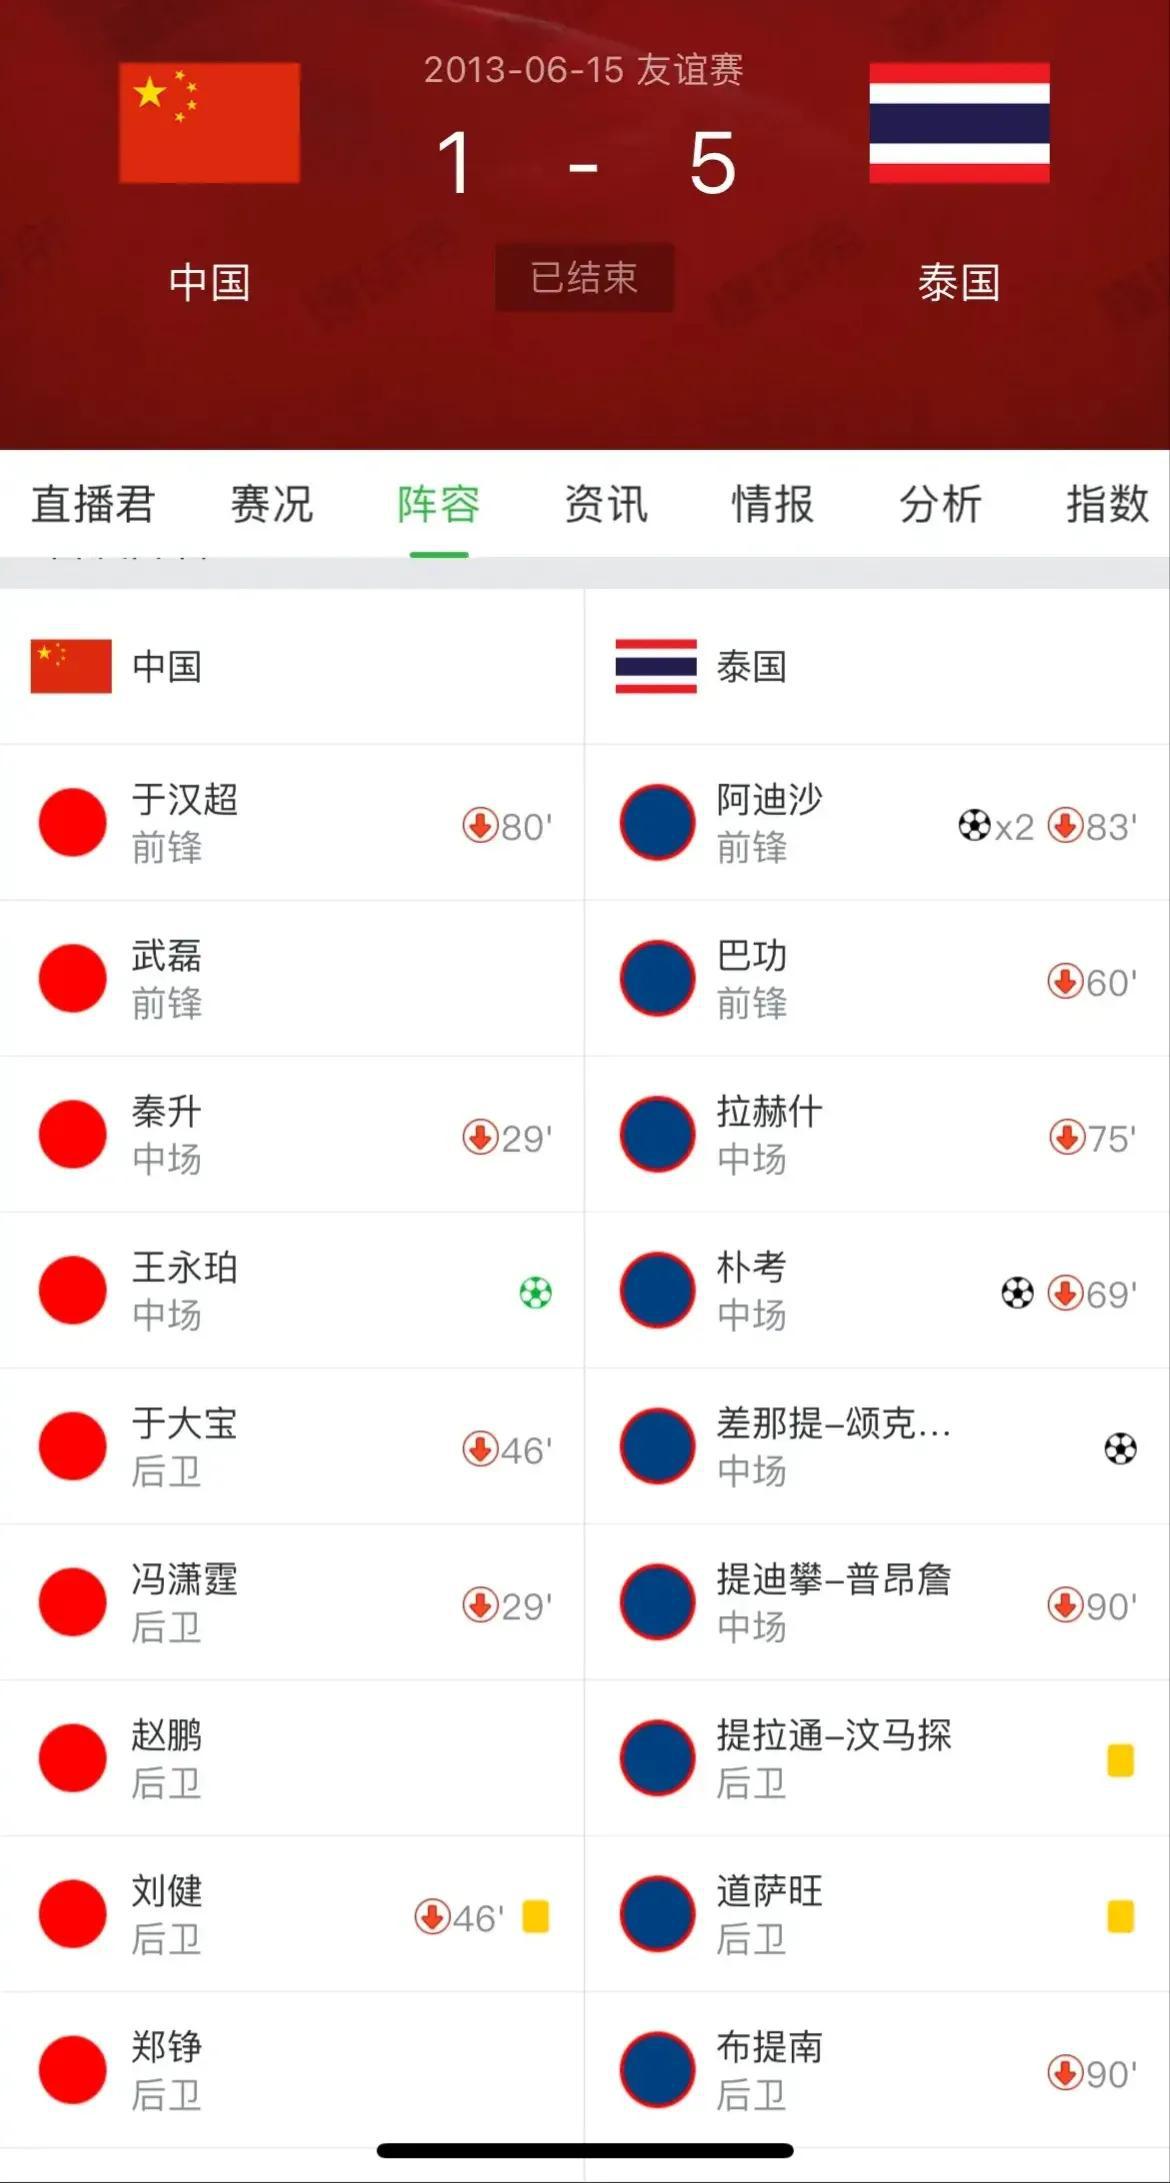 秦升落网后，中国男足在十年前1比5输给泰国男足的比赛，几乎可以笃定是假球了！

(1)